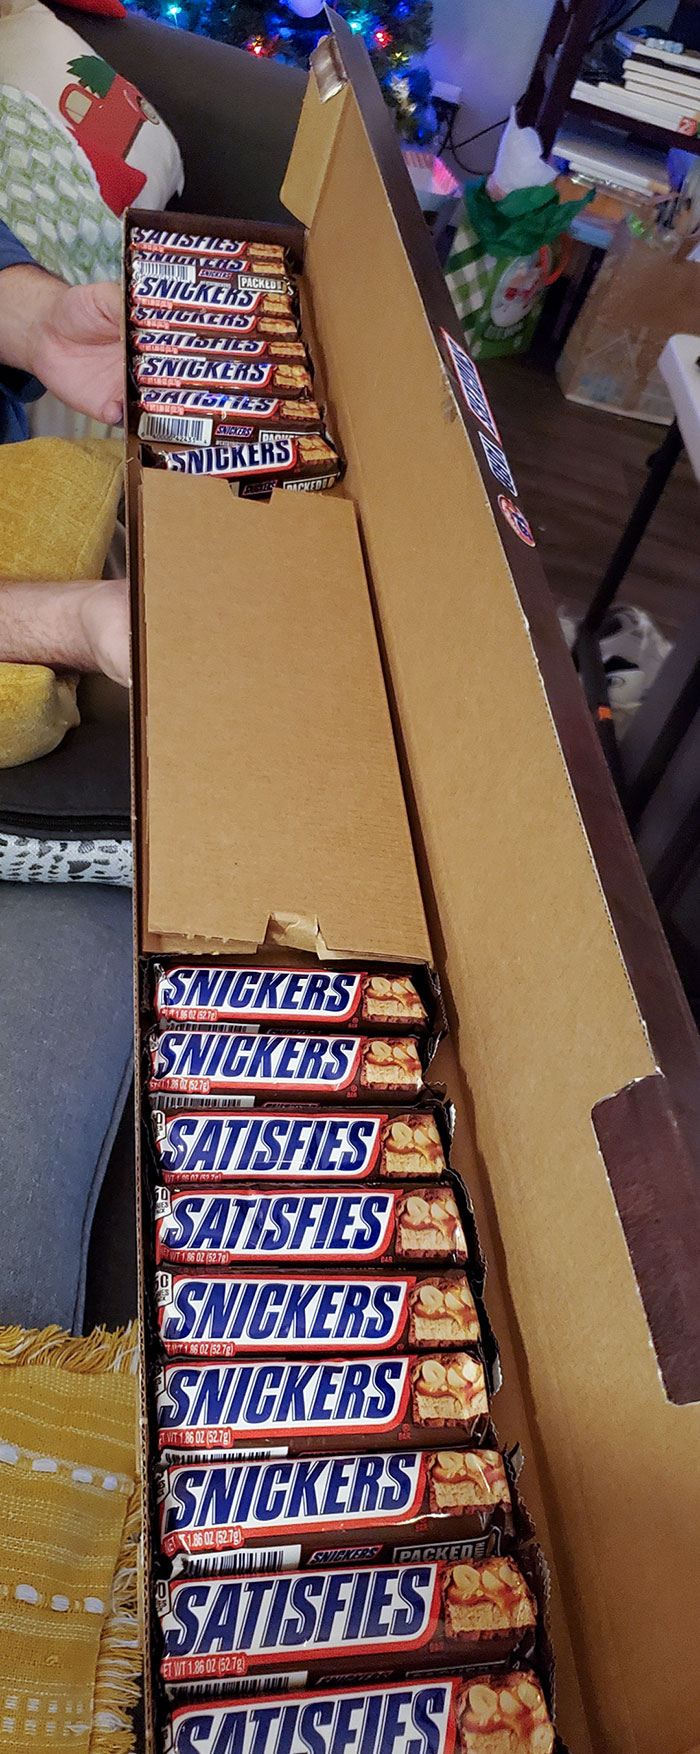 Te venden una "yarda" de snickers y vienen así. Son 18 en total